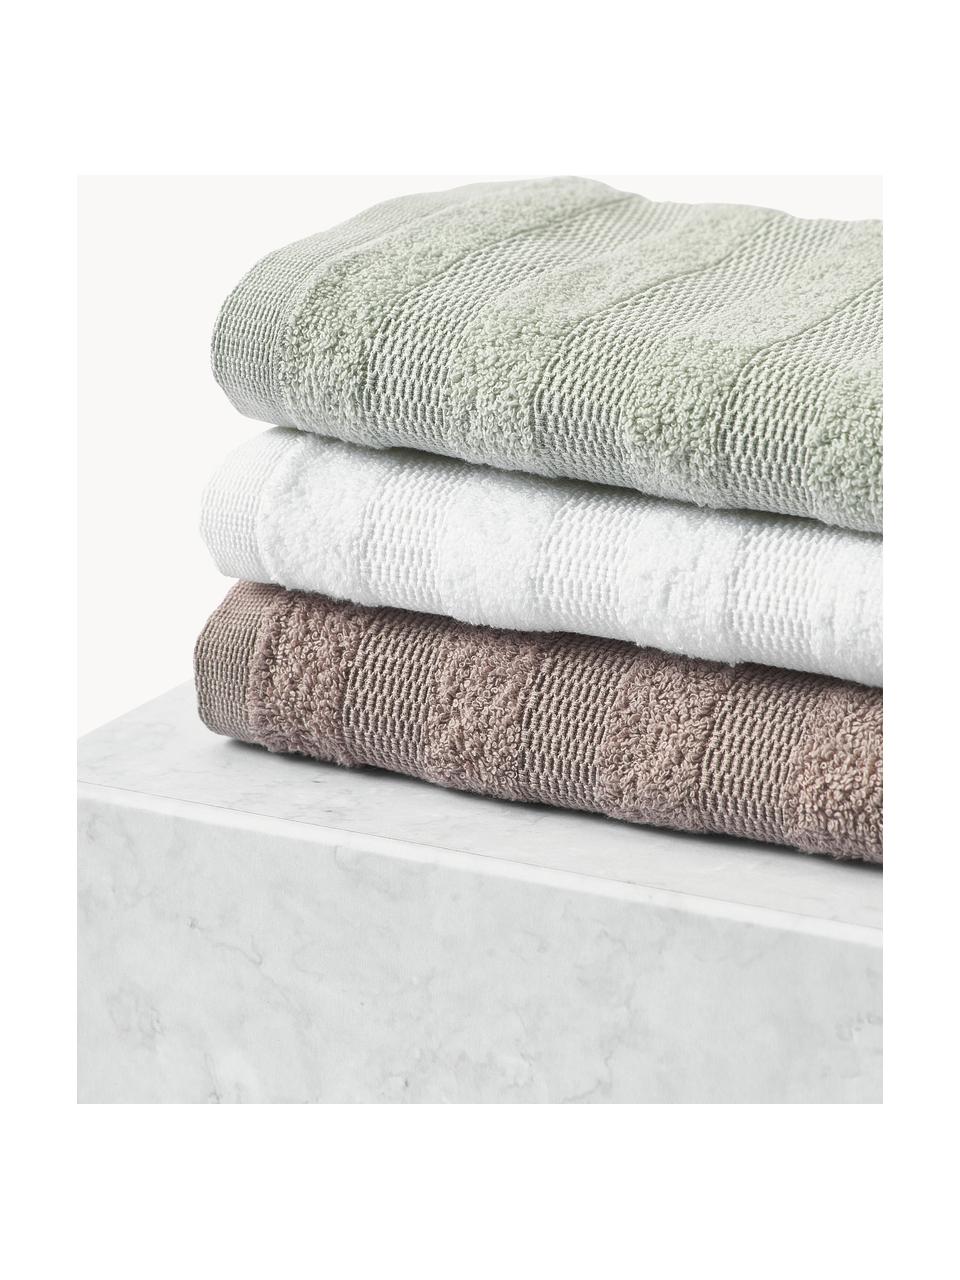 Set de toallas texturizadas Yara, 3 uds., Malva, Set de 3 (toalla tocador, toalla lavabo y toalla ducha)